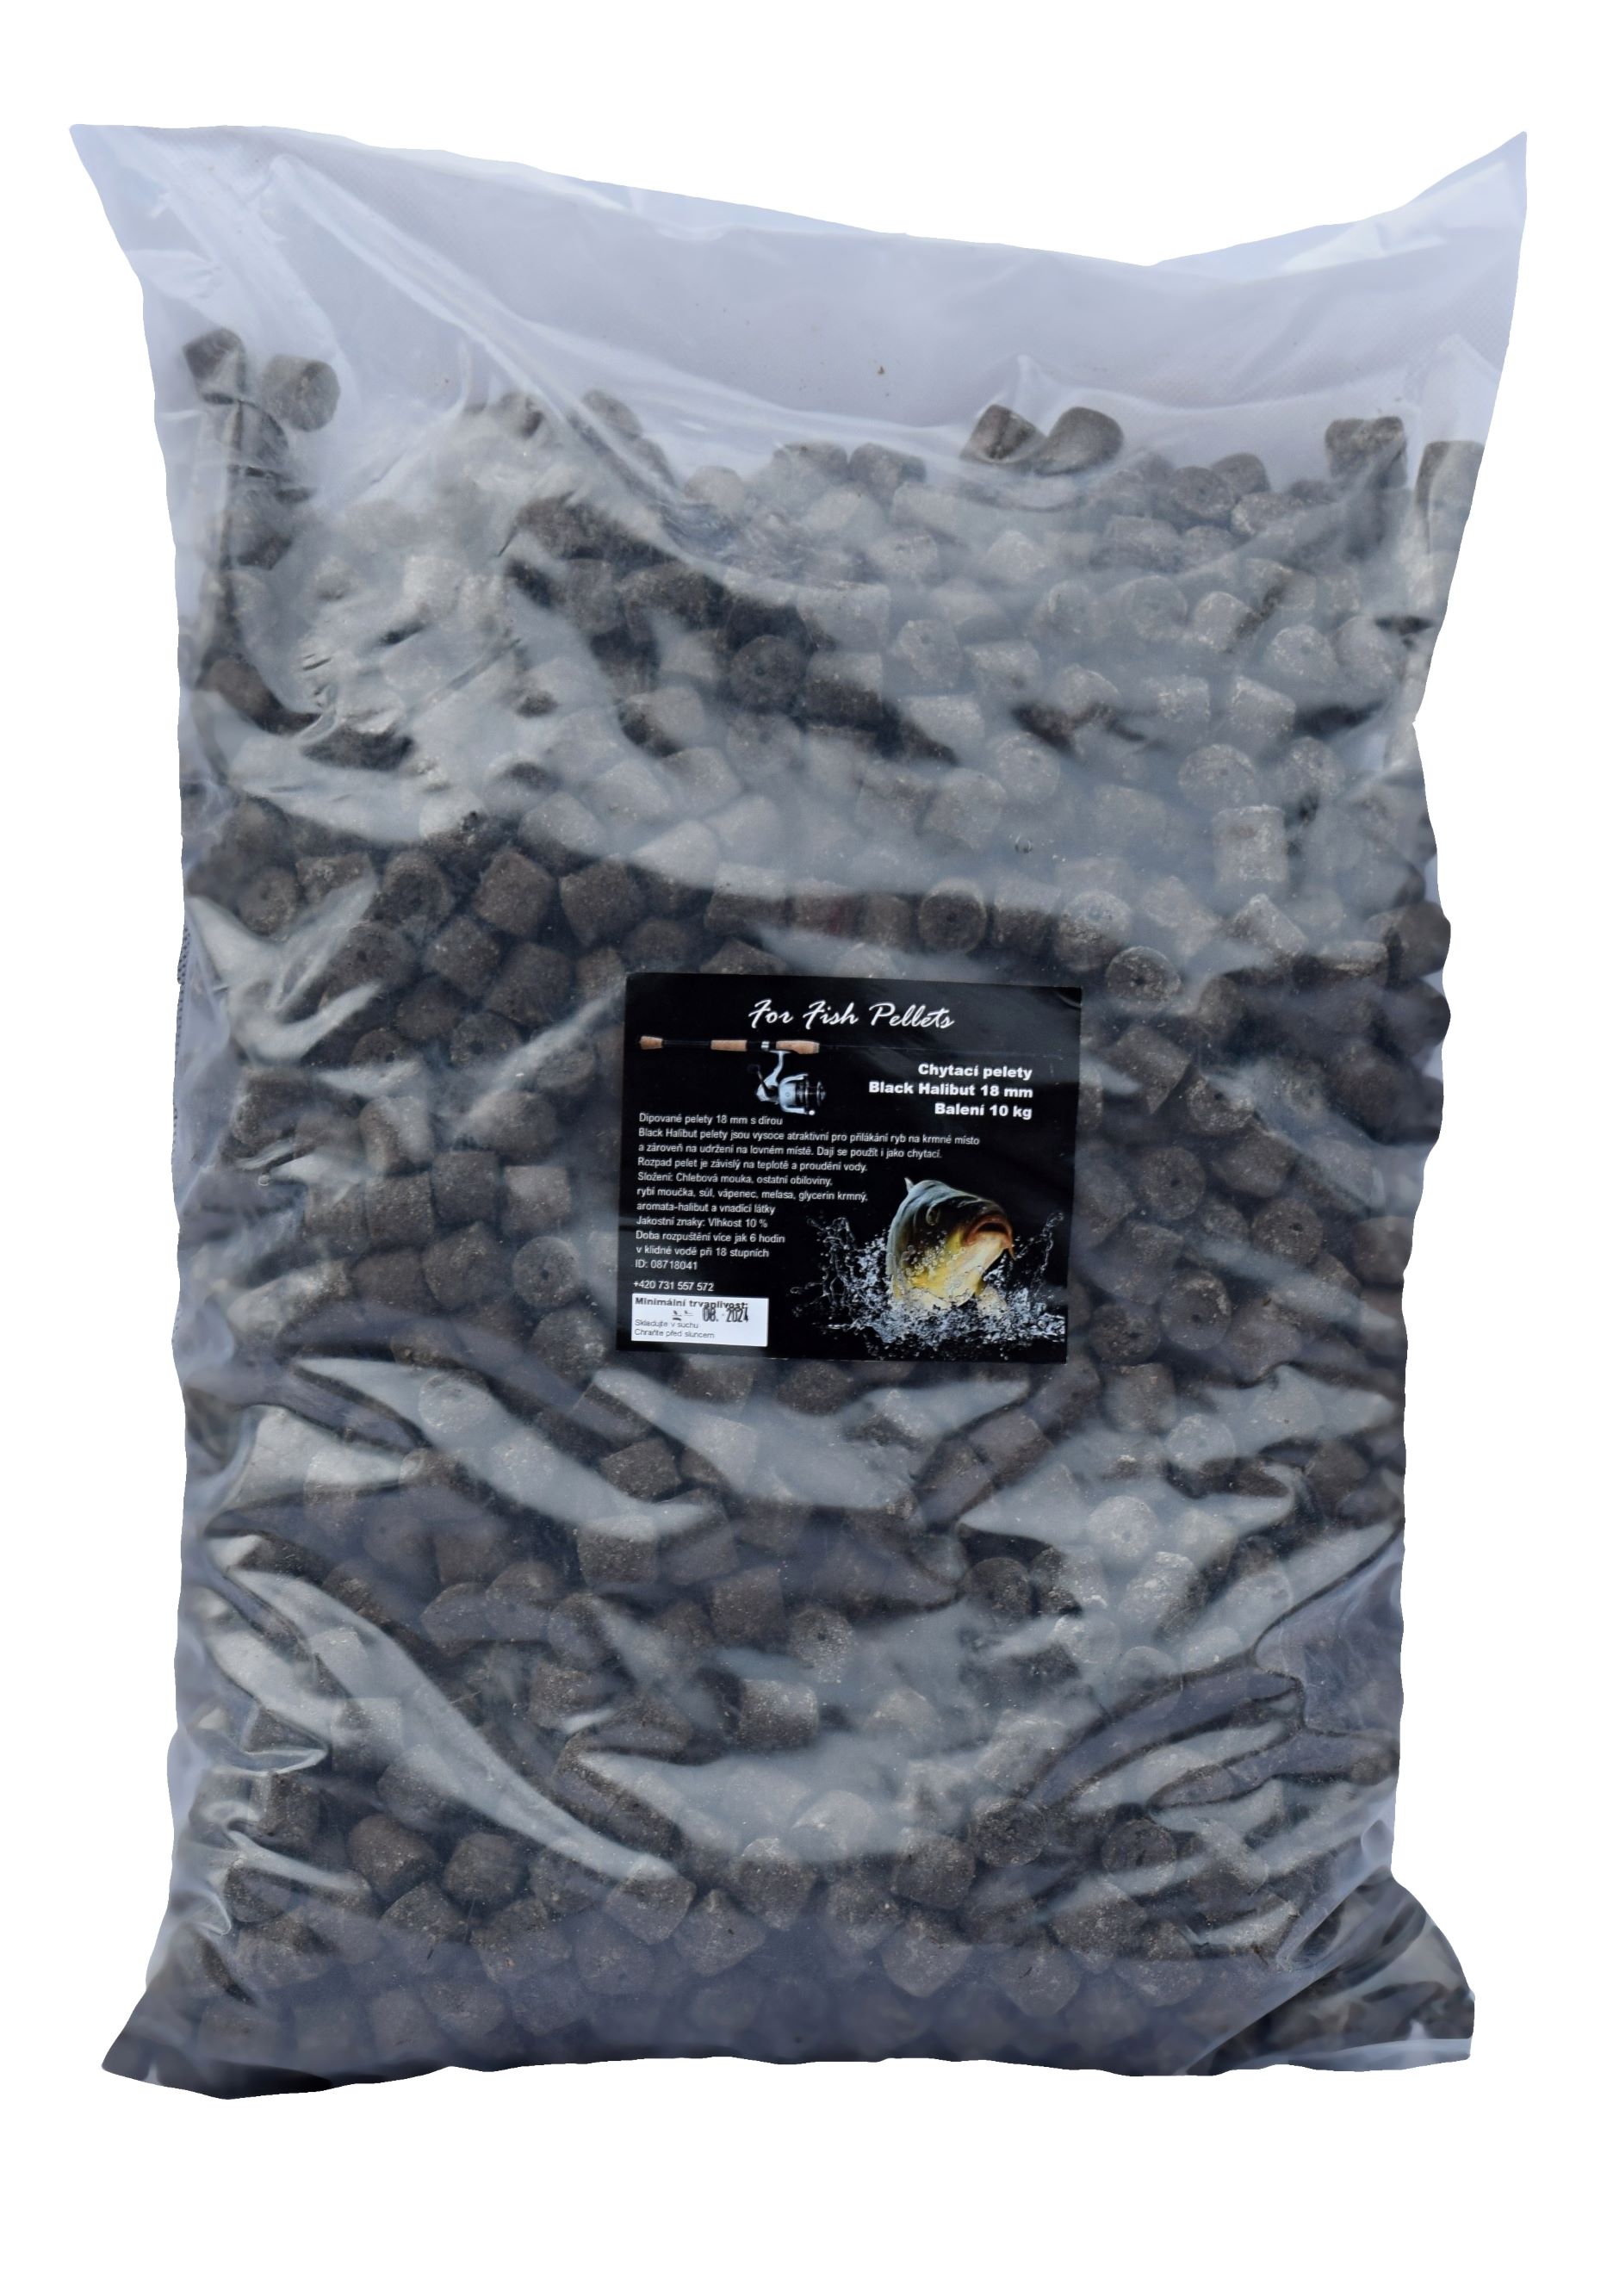 For Fish Pellets - Black Halibut 18mm  - zvìtšit obrázek